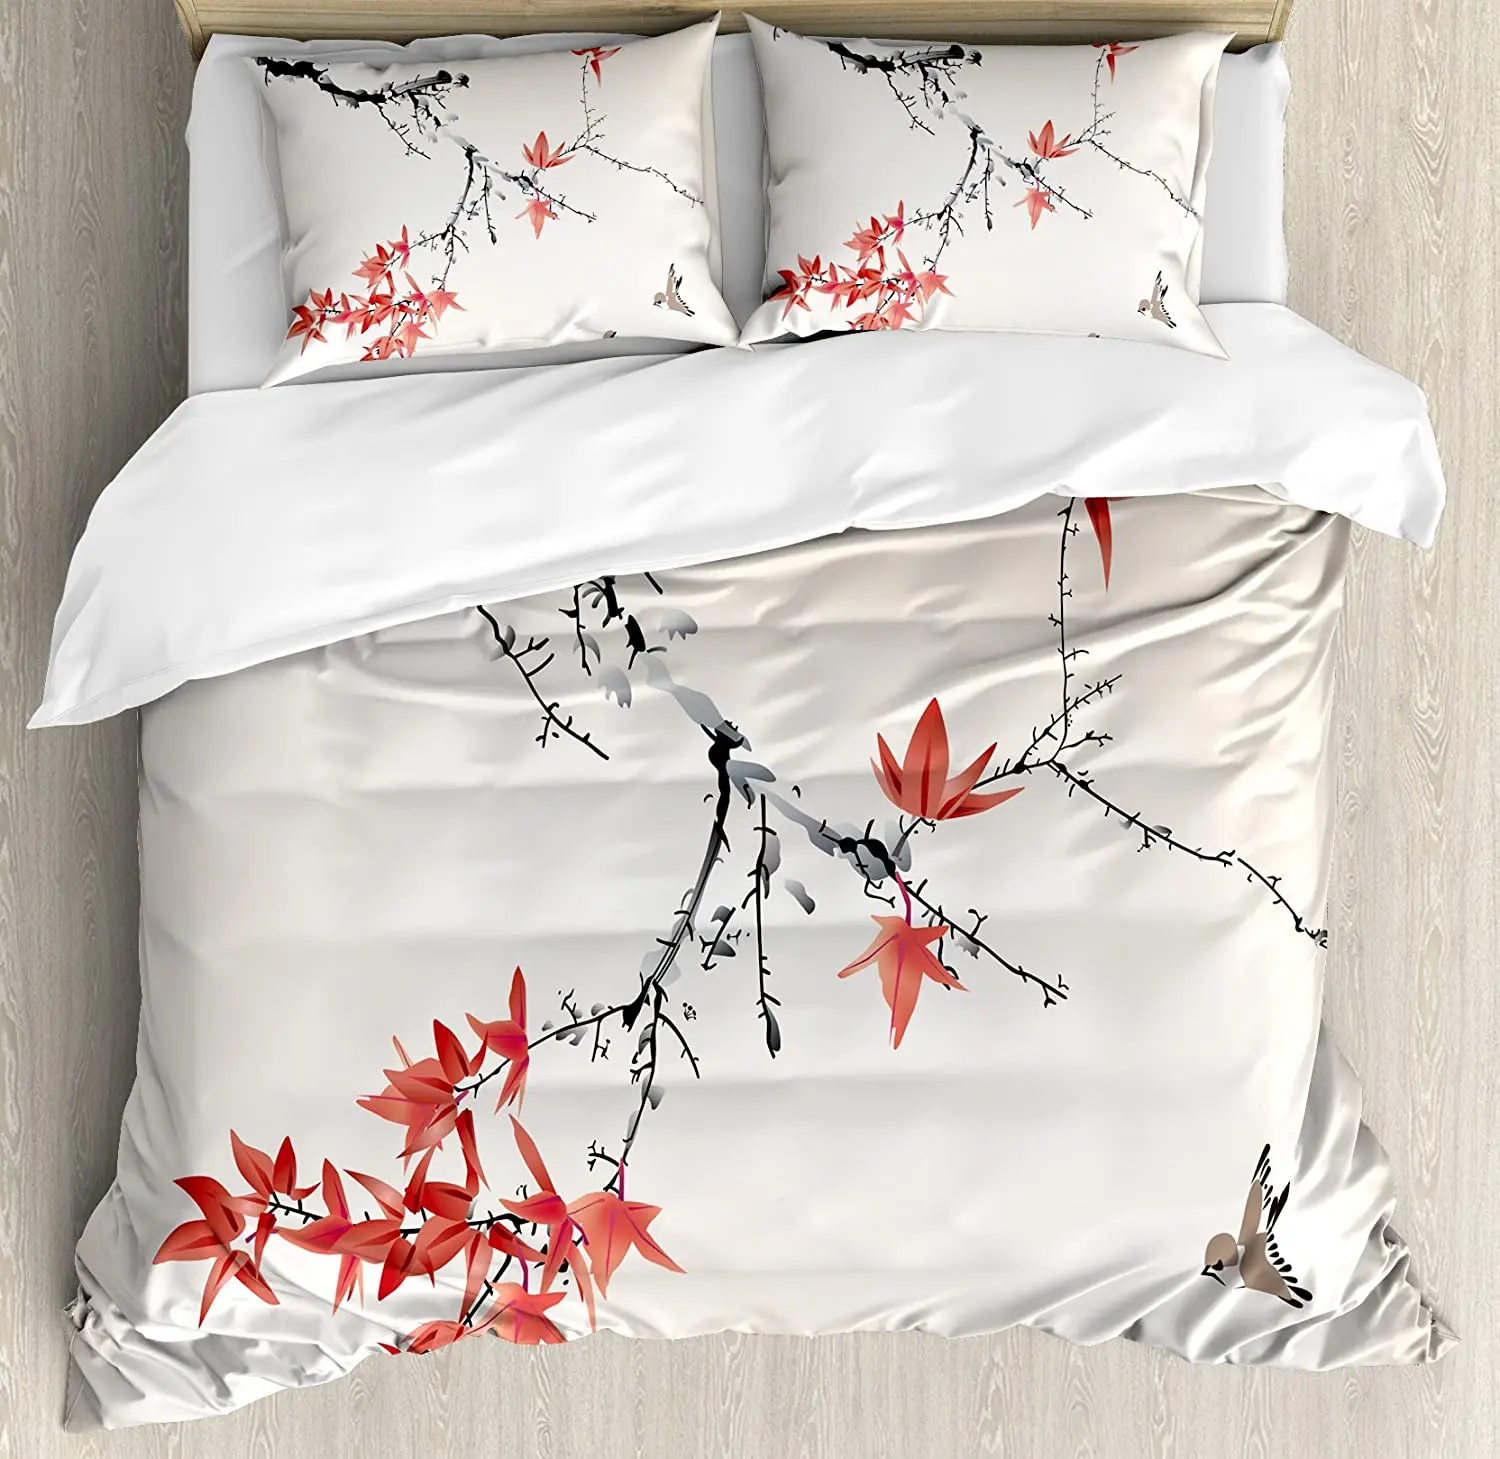 

Japanese Bedding Set For Bedroom Bed Home Cherry Blossom Sakura Tree Branches Romantic Spr Duvet Cover Quilt Cover Pillowcase